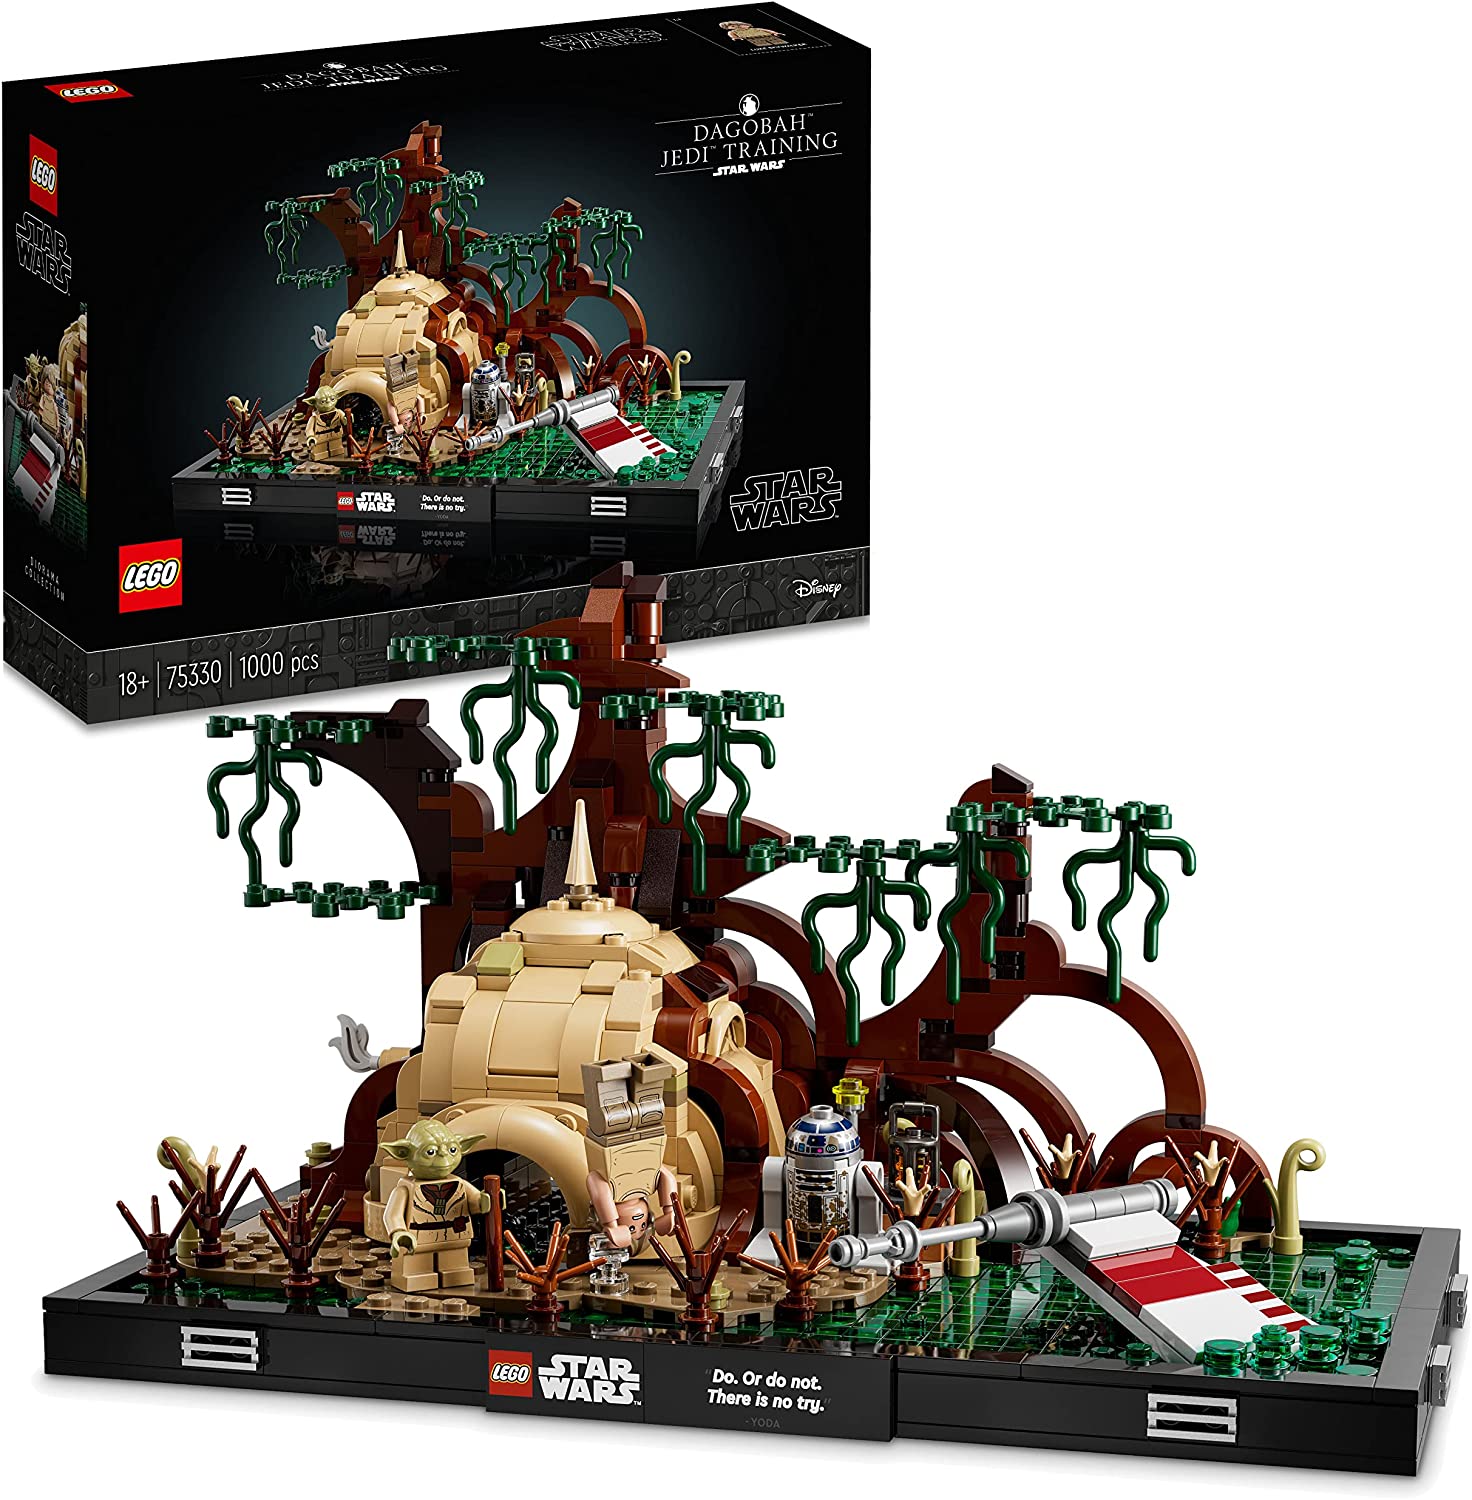 LEGO 75330 Star Wars Jedi Training auf Dagobah – Diorama Set, baubares Modell für Erwachsene mit Luke Skywalker, Yoda und R2-D2, Fanartikel, Vatertagsgeschenk